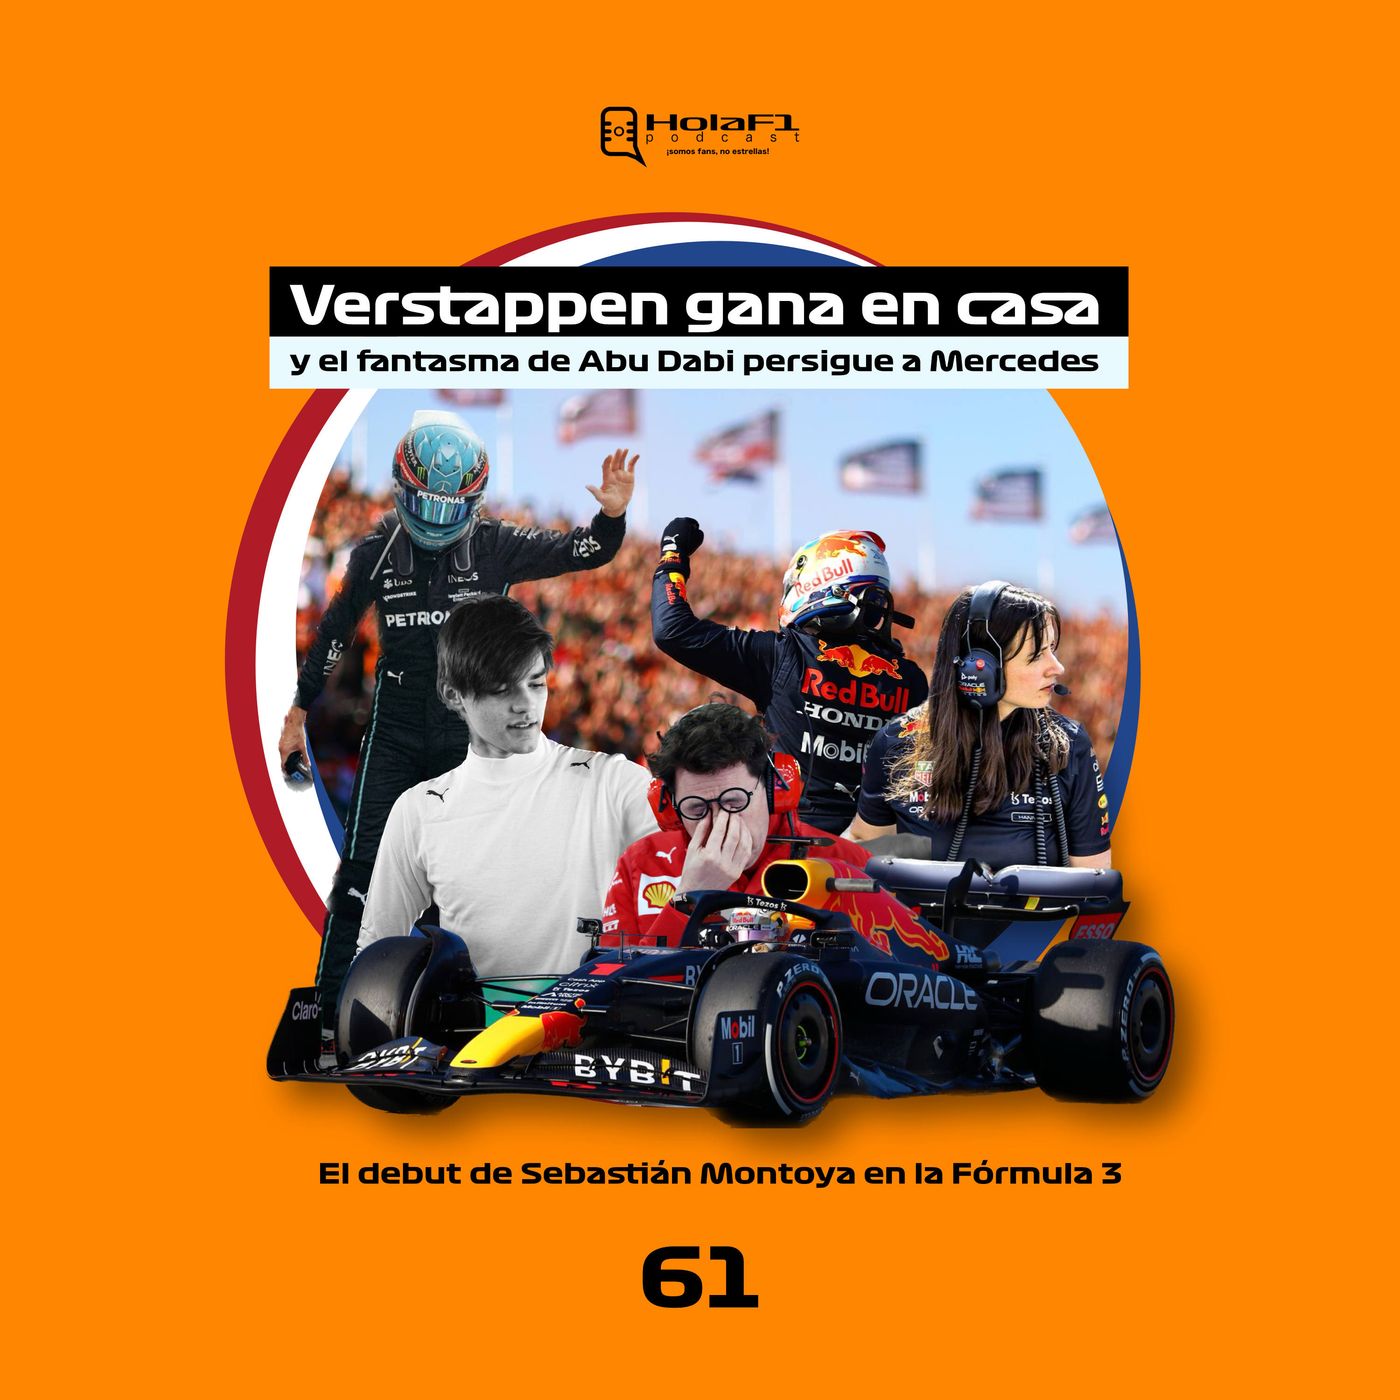 GP de los Países Bajos: Verstappen gana en casa y el fantasma de Abu Dabi persigue a Mercedes